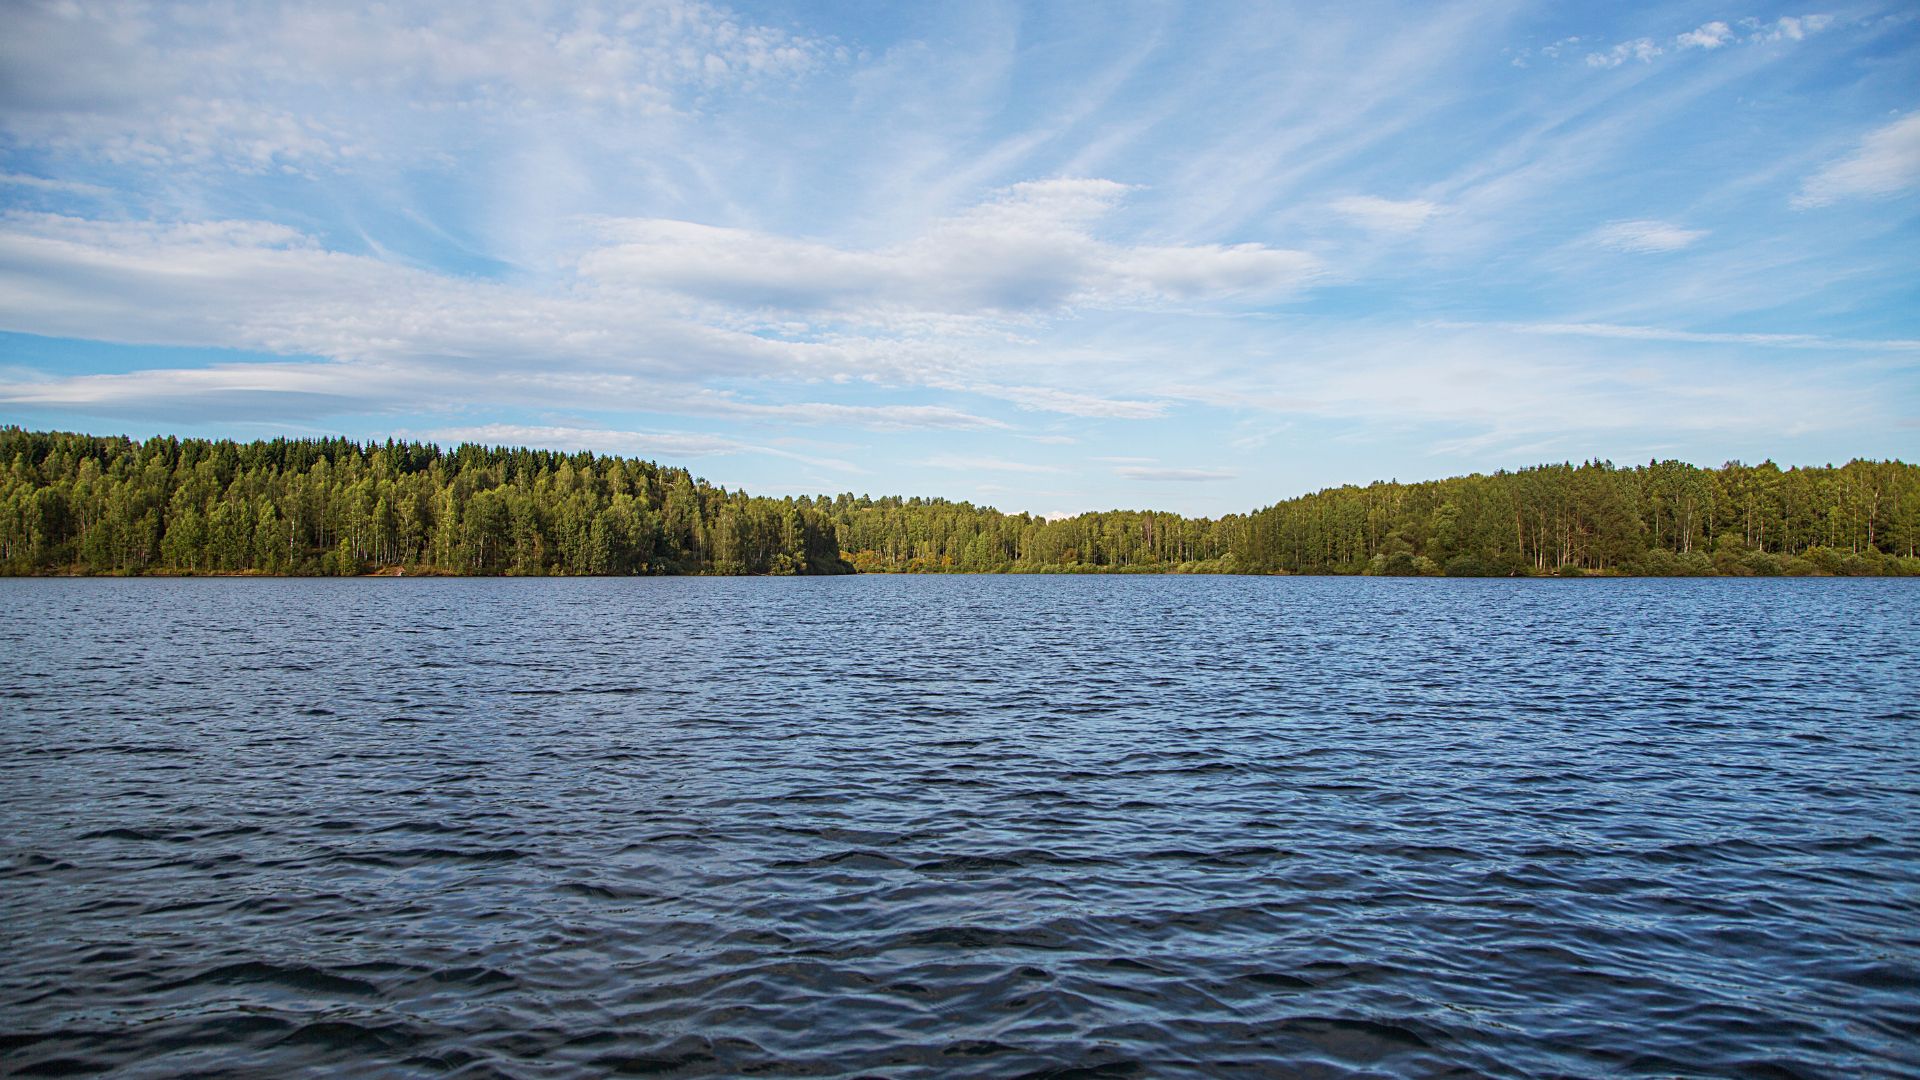 The floating islands on Vlasina lake